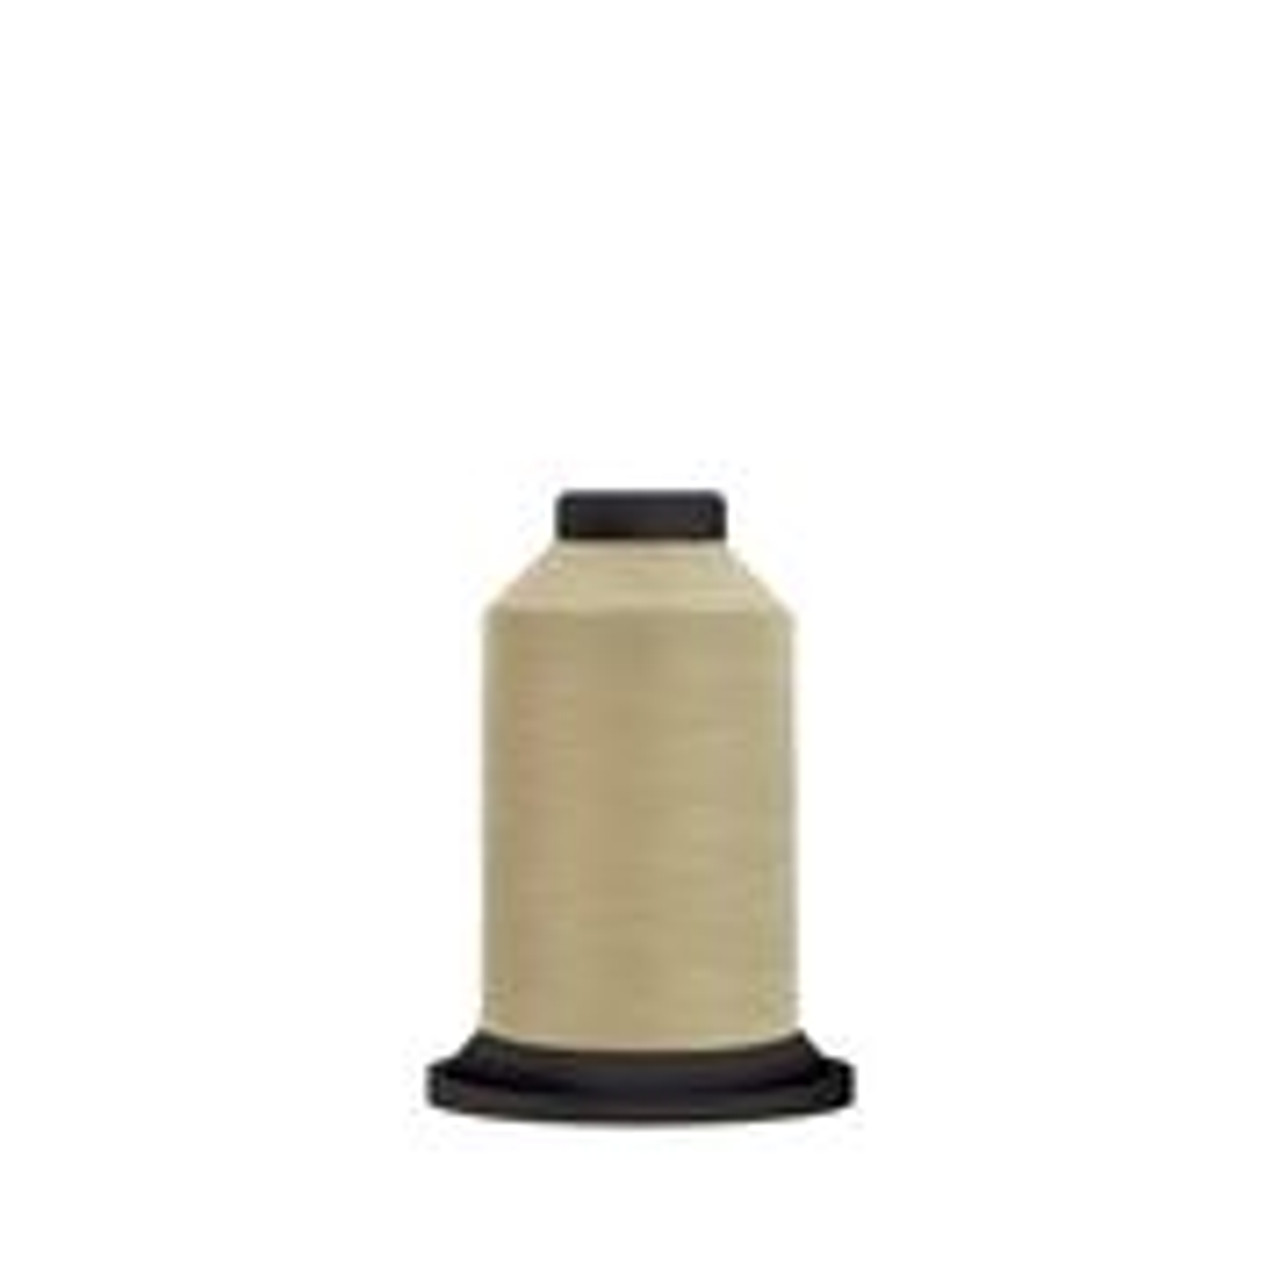 Premo-Soft Thread Spool Wheat 27500